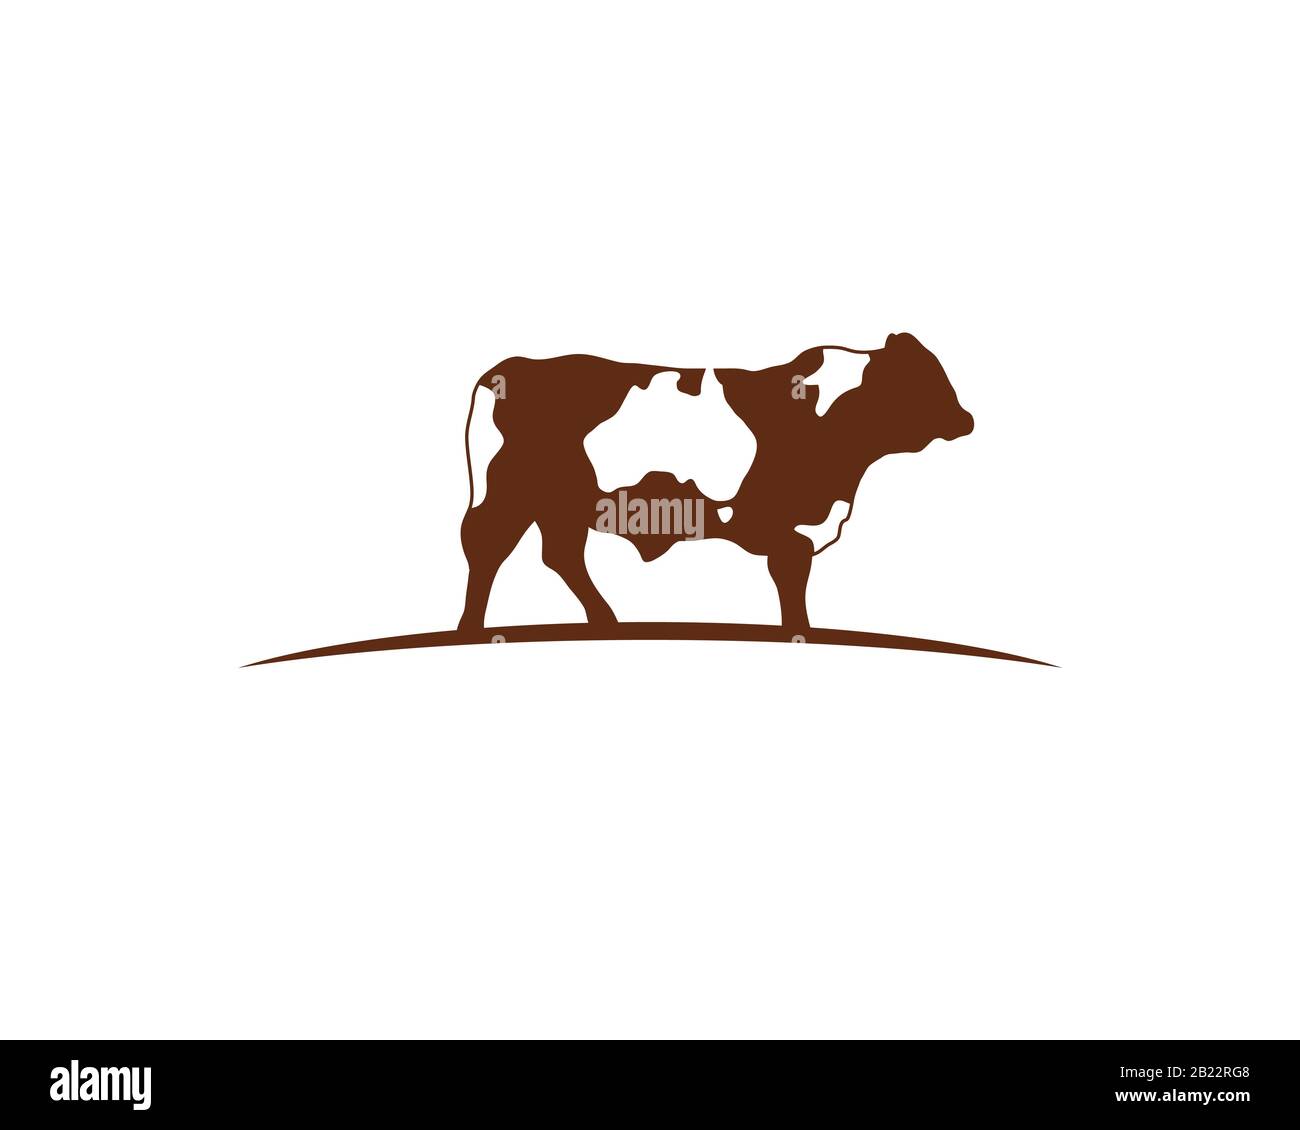 Logo einer braunen Kuh, die auf einem geschwungenen Horizont steht Mit australien Karte als negativer Raum auf der ganzen Haut Stock Vektor